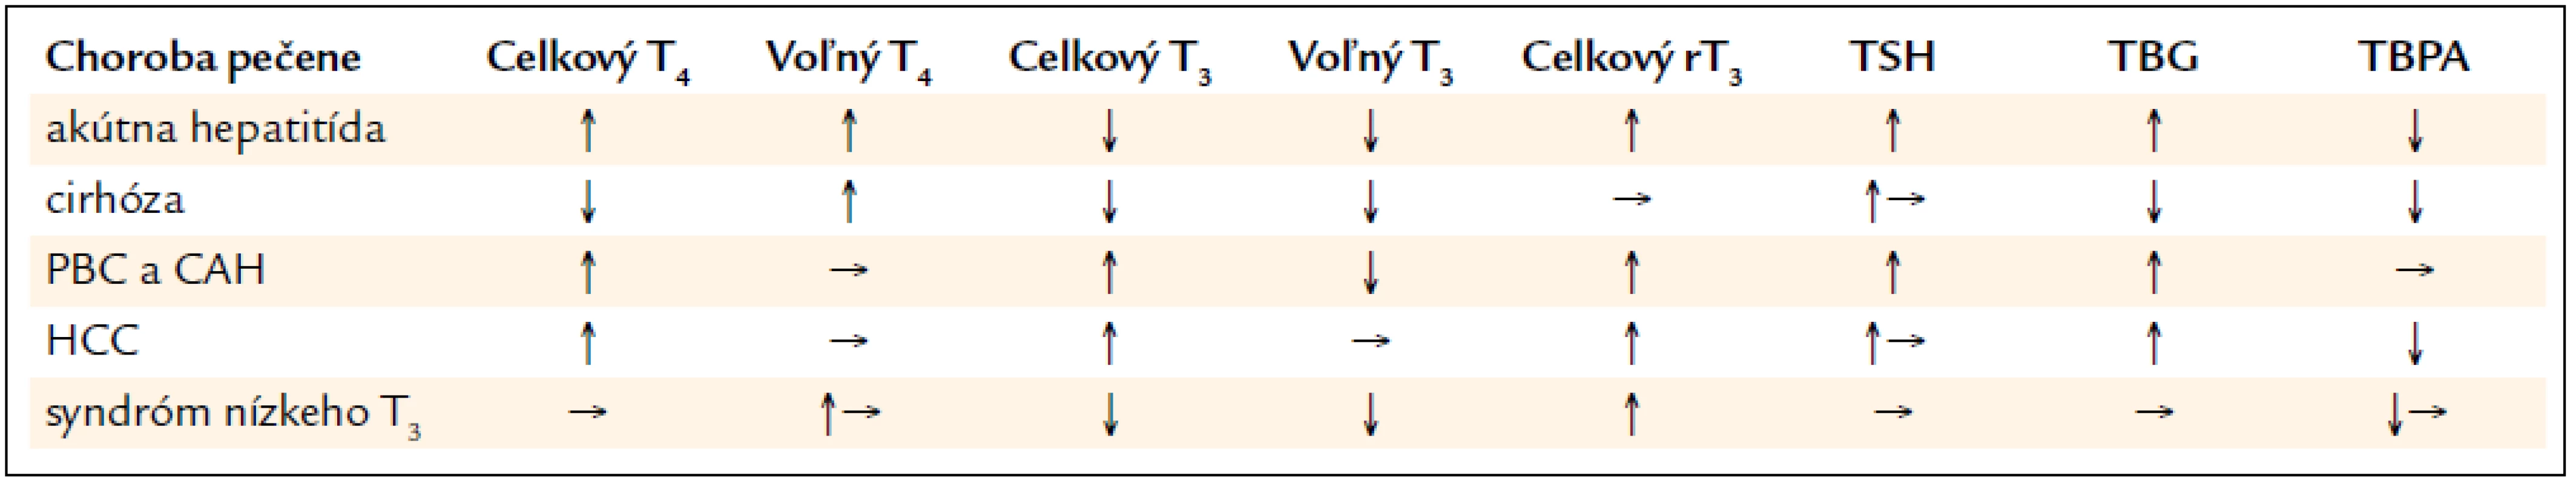 Zmeny funkčných parametrov štítnej žľazy v sére pri chorobách pečene a syndrómem nízkeho T&lt;sub&gt;3&lt;/sub&gt;